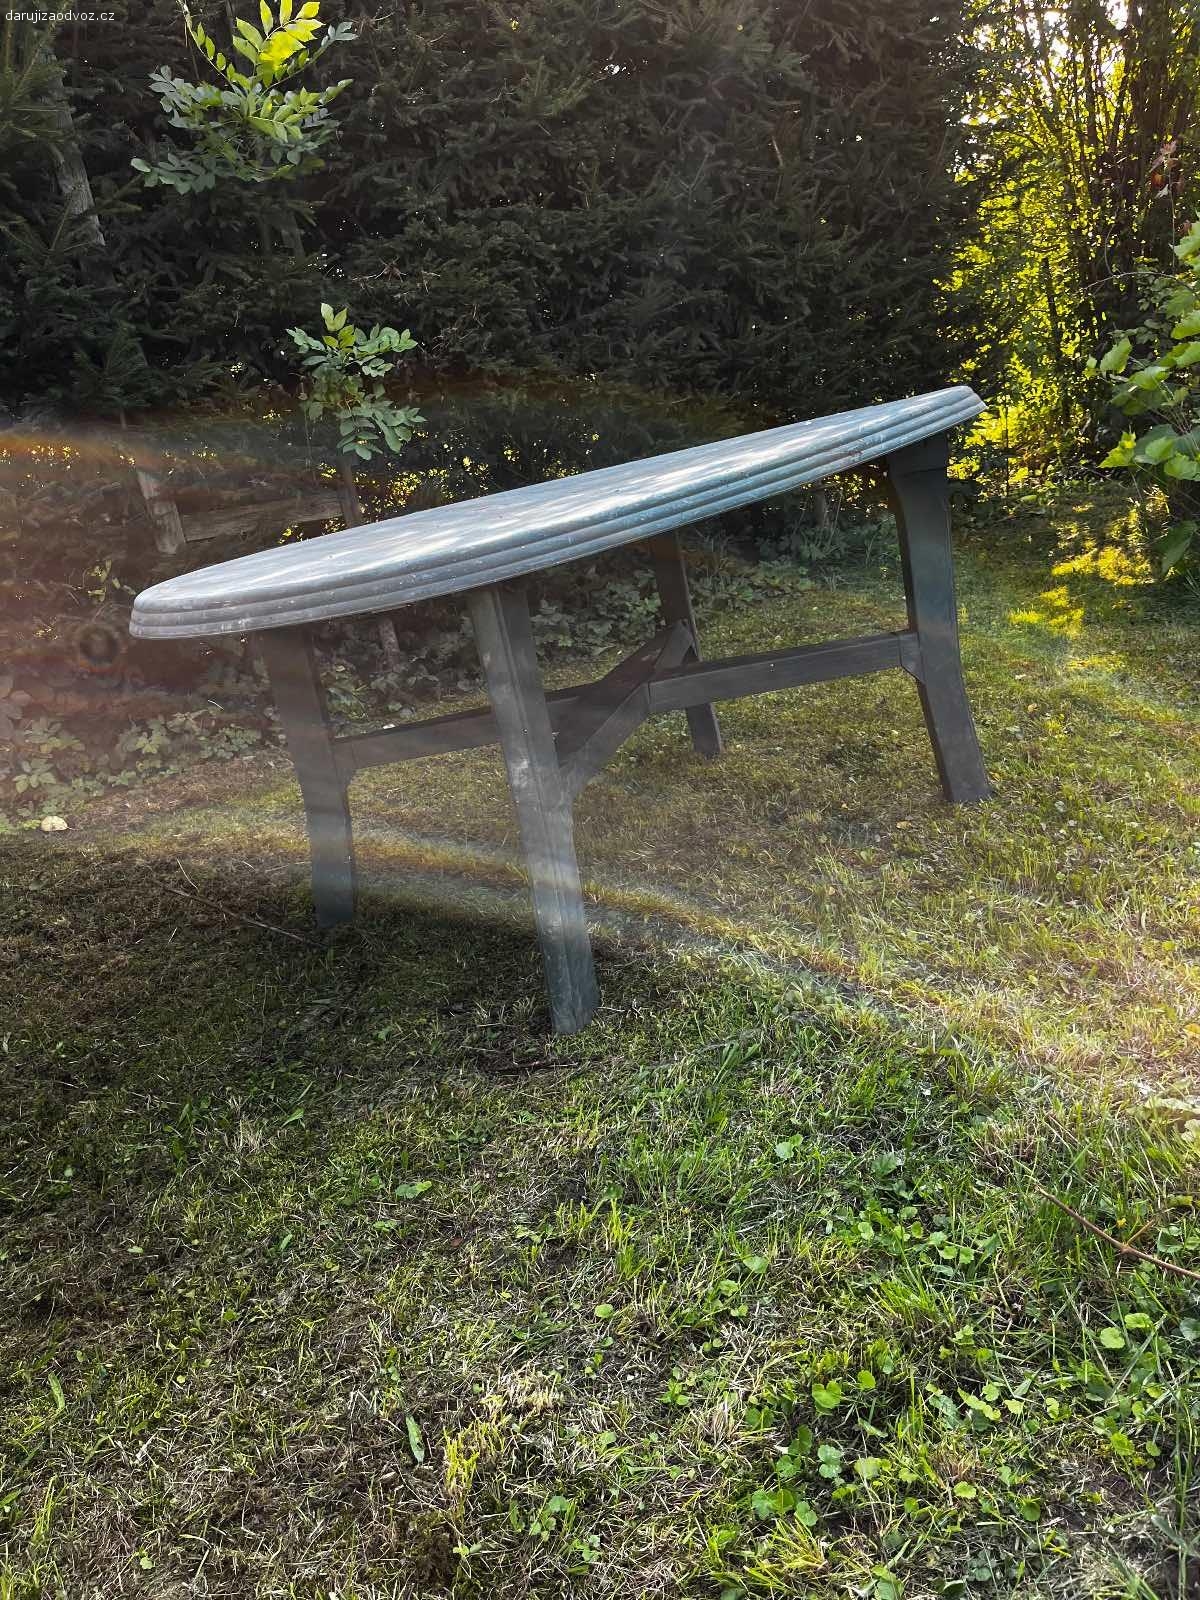 Plastový zahradní stůl rozložitelný. Nic mu není co do funkčnosti. Jedinou vadou je vyblednutá barva vlivem slunce.